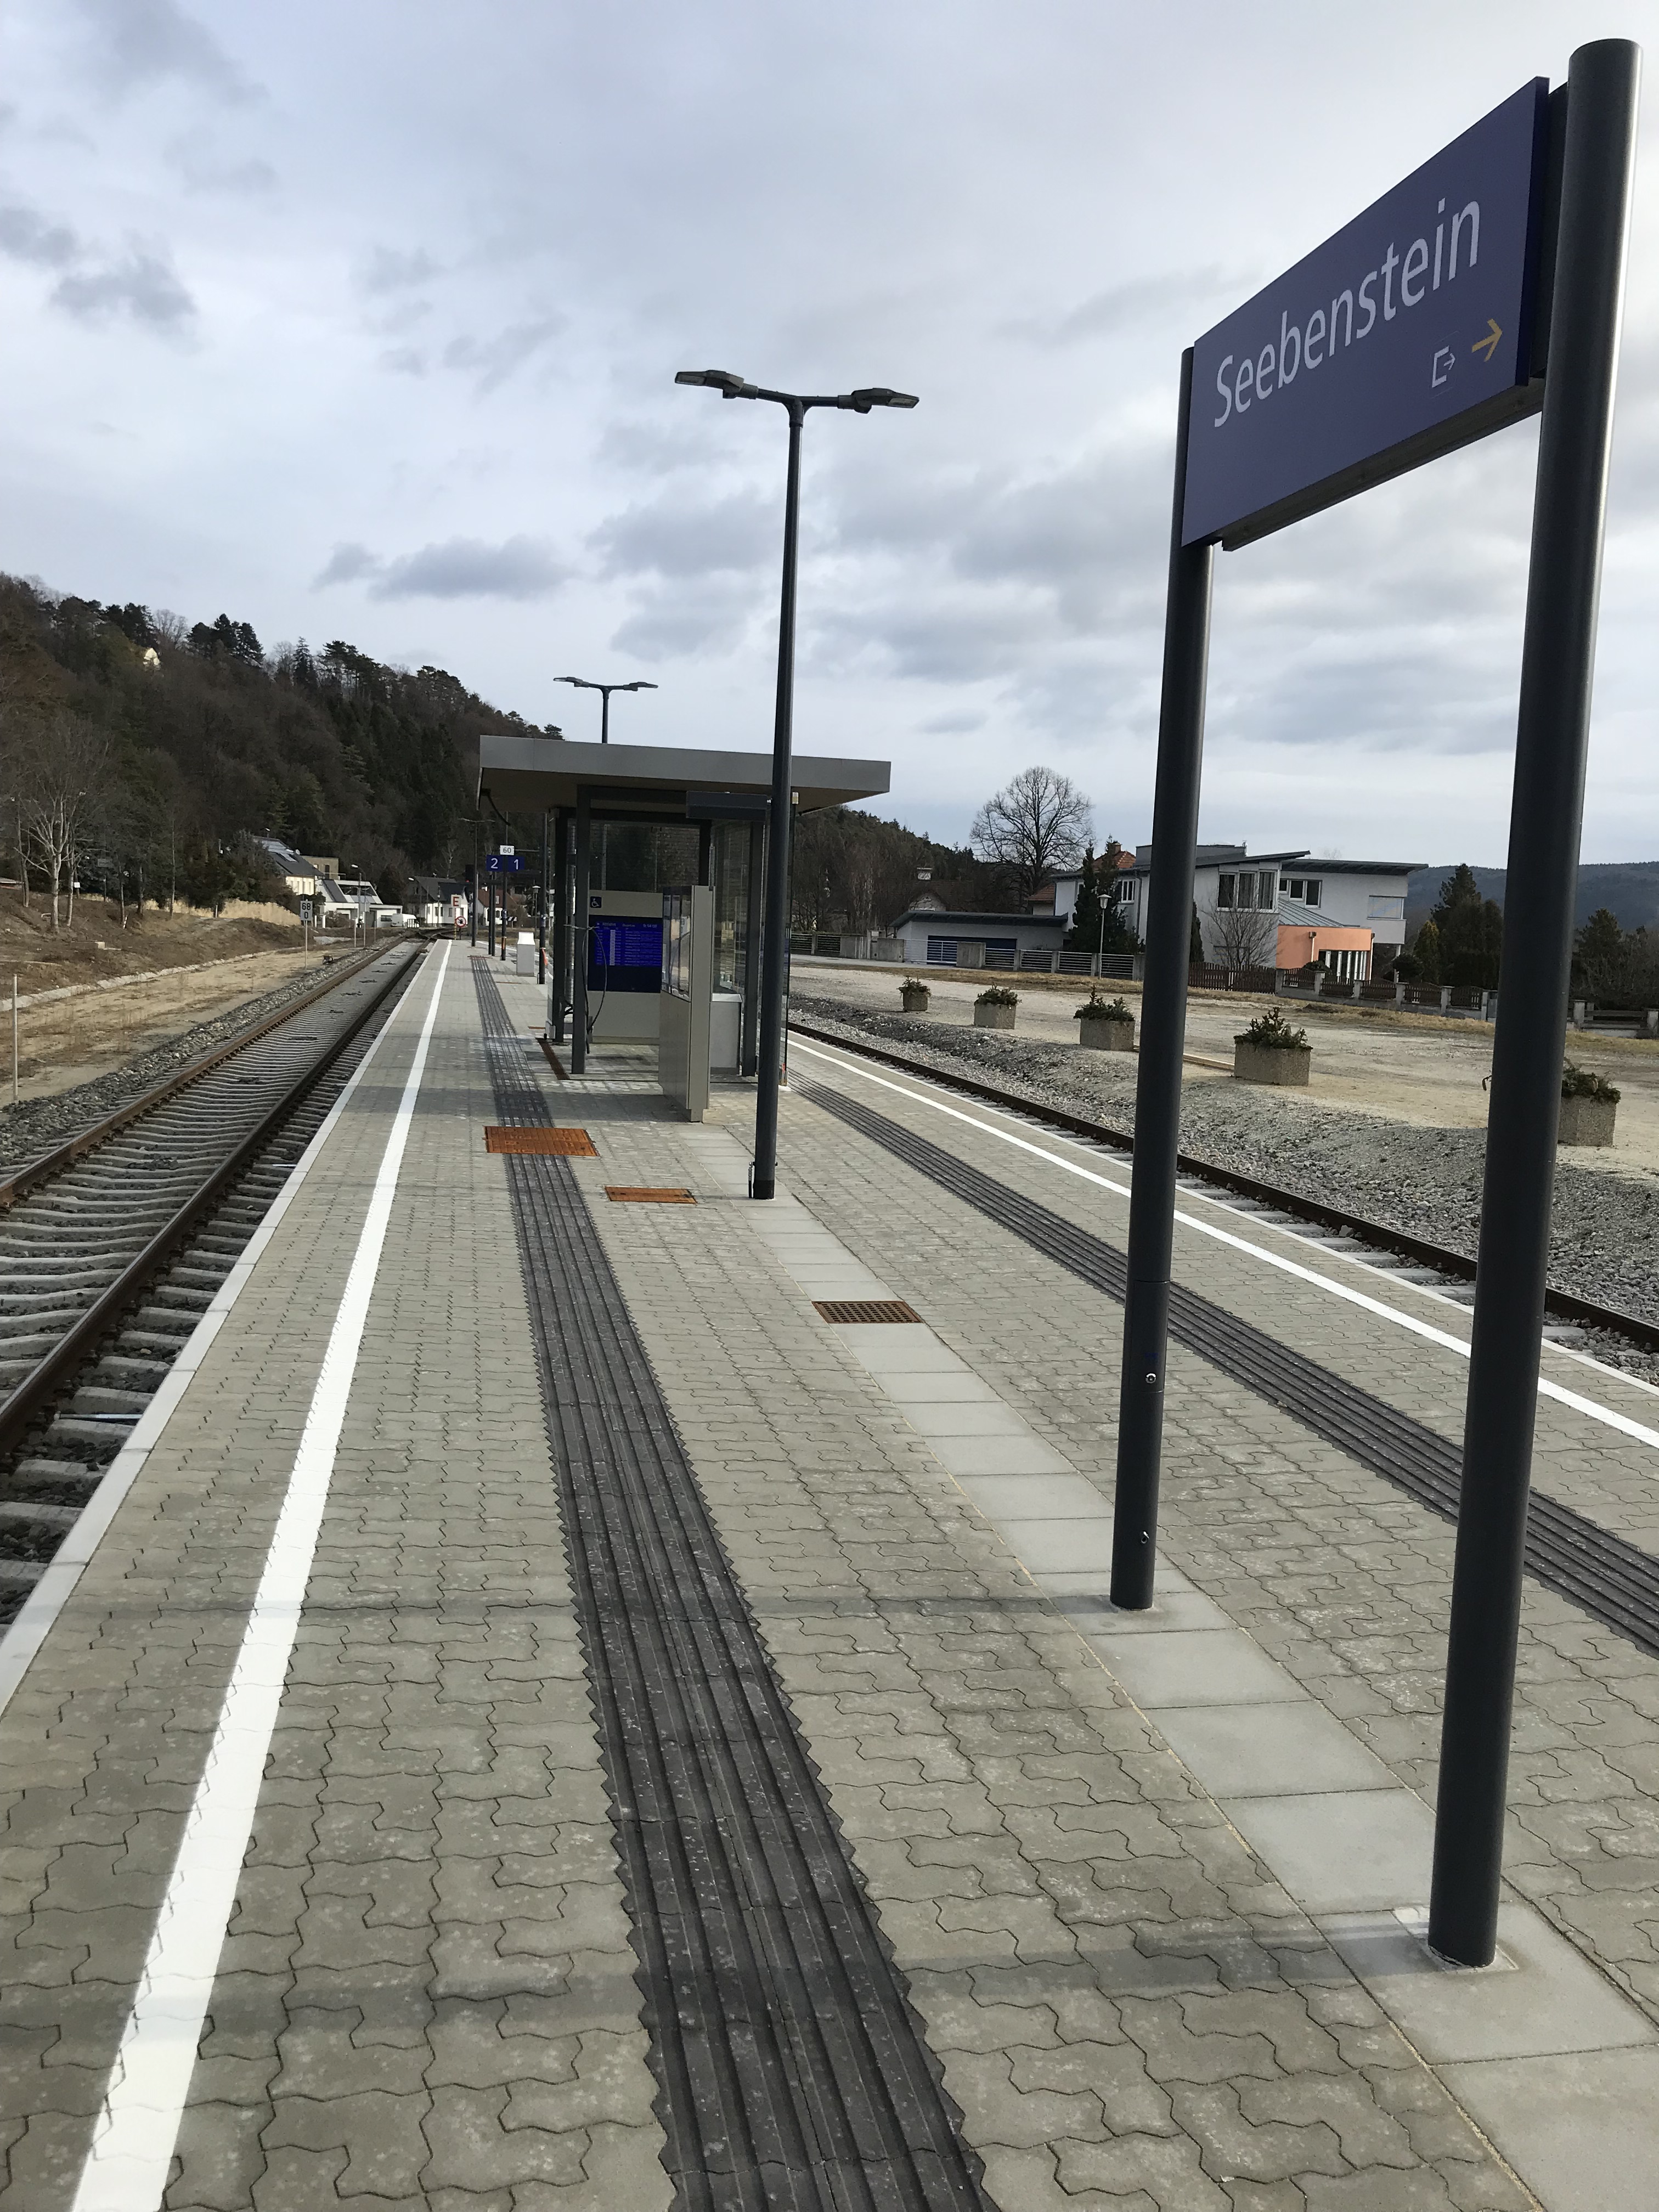 Umbau Bahnhof Seebenstein - Byggevirksomhed